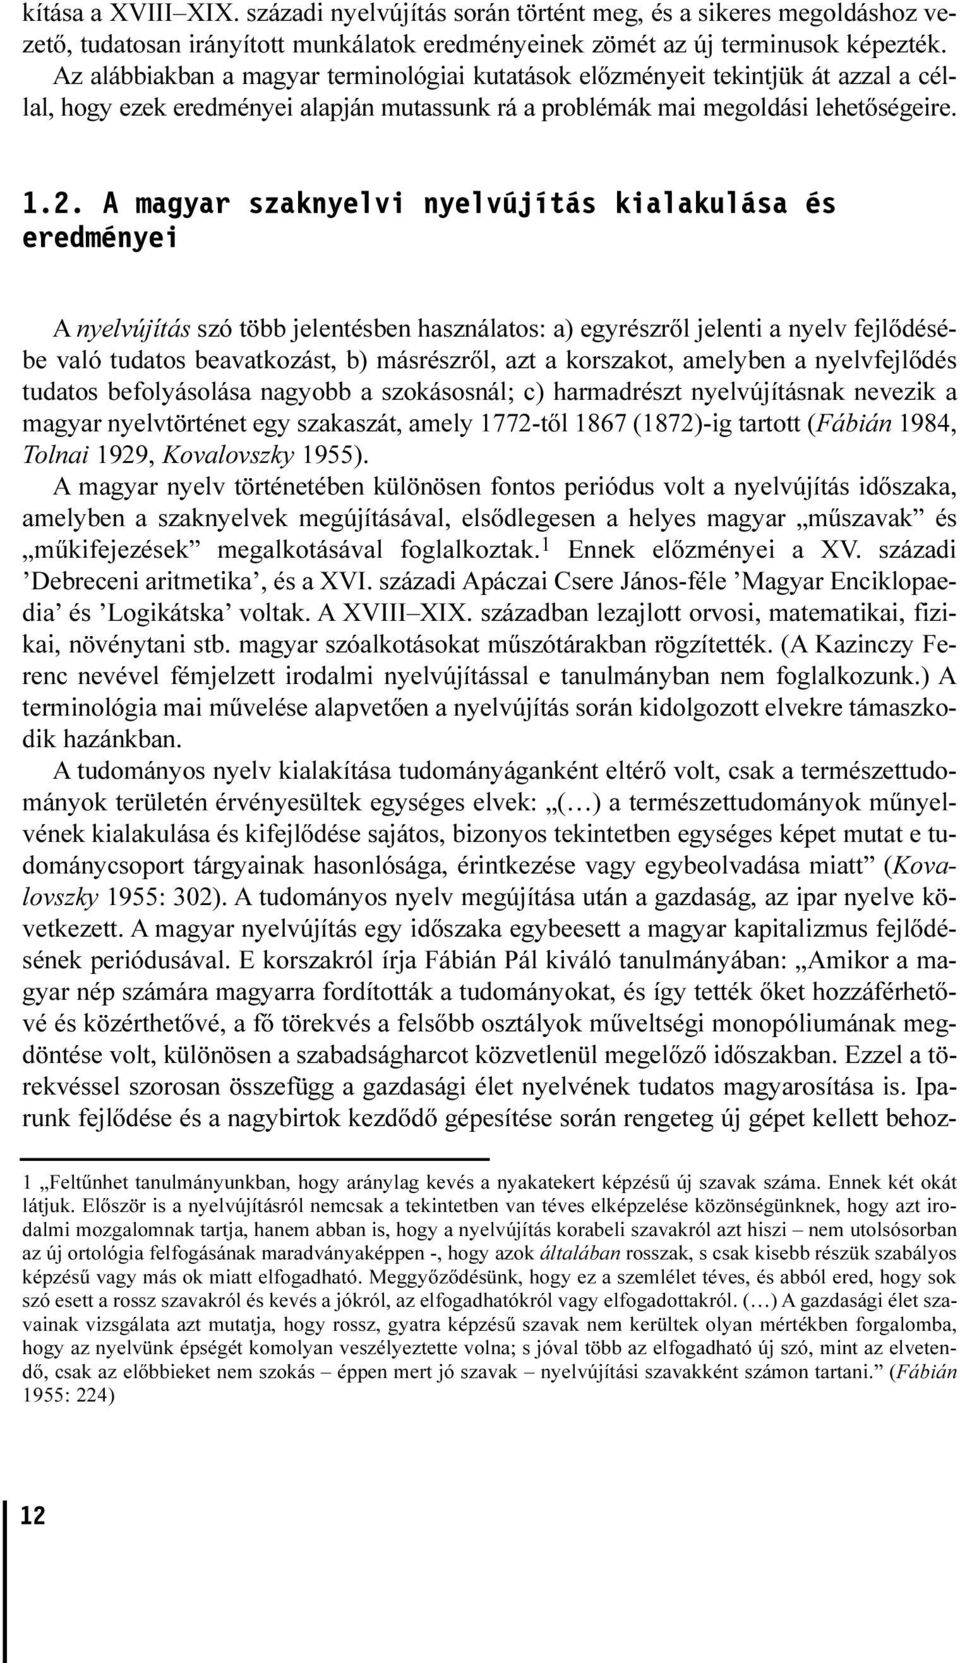 A magyar szaknyelvi nyelvújítás kialakulása és eredményei A nyelvújítás szó több jelentésben használatos: a) egyrészrõl jelenti a nyelv fejlõdésébe való tudatos beavatkozást, b) másrészrõl, azt a